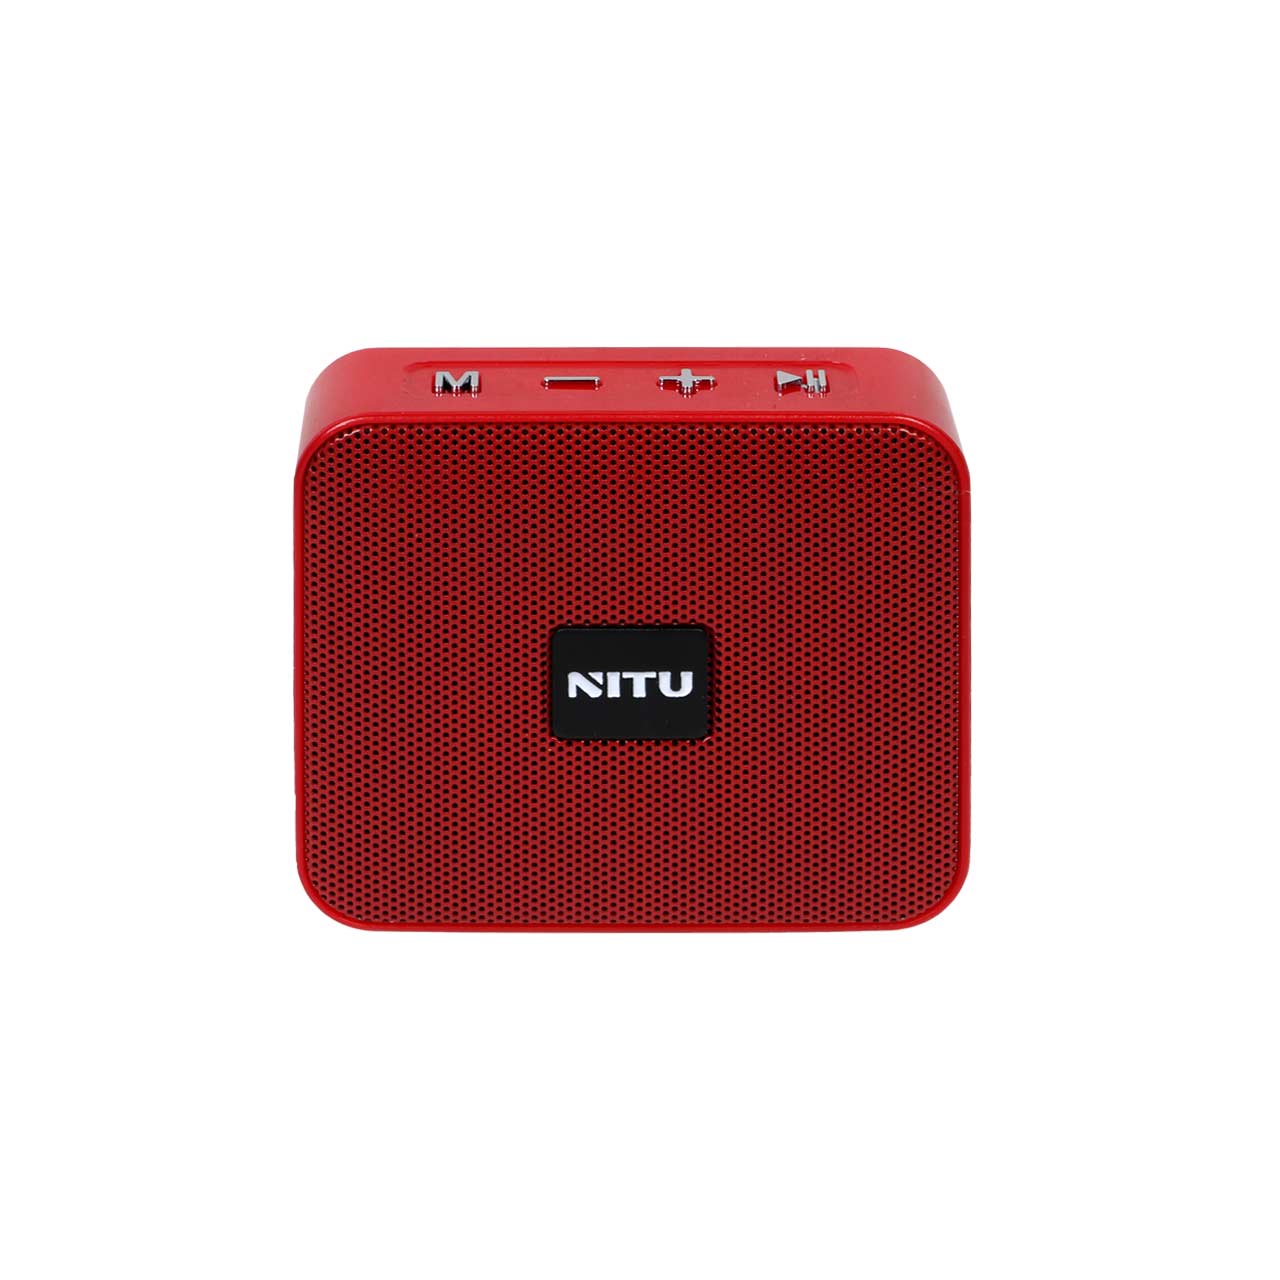 اسپیکر بی سیم NITU مدل NITU-10 - قرمز